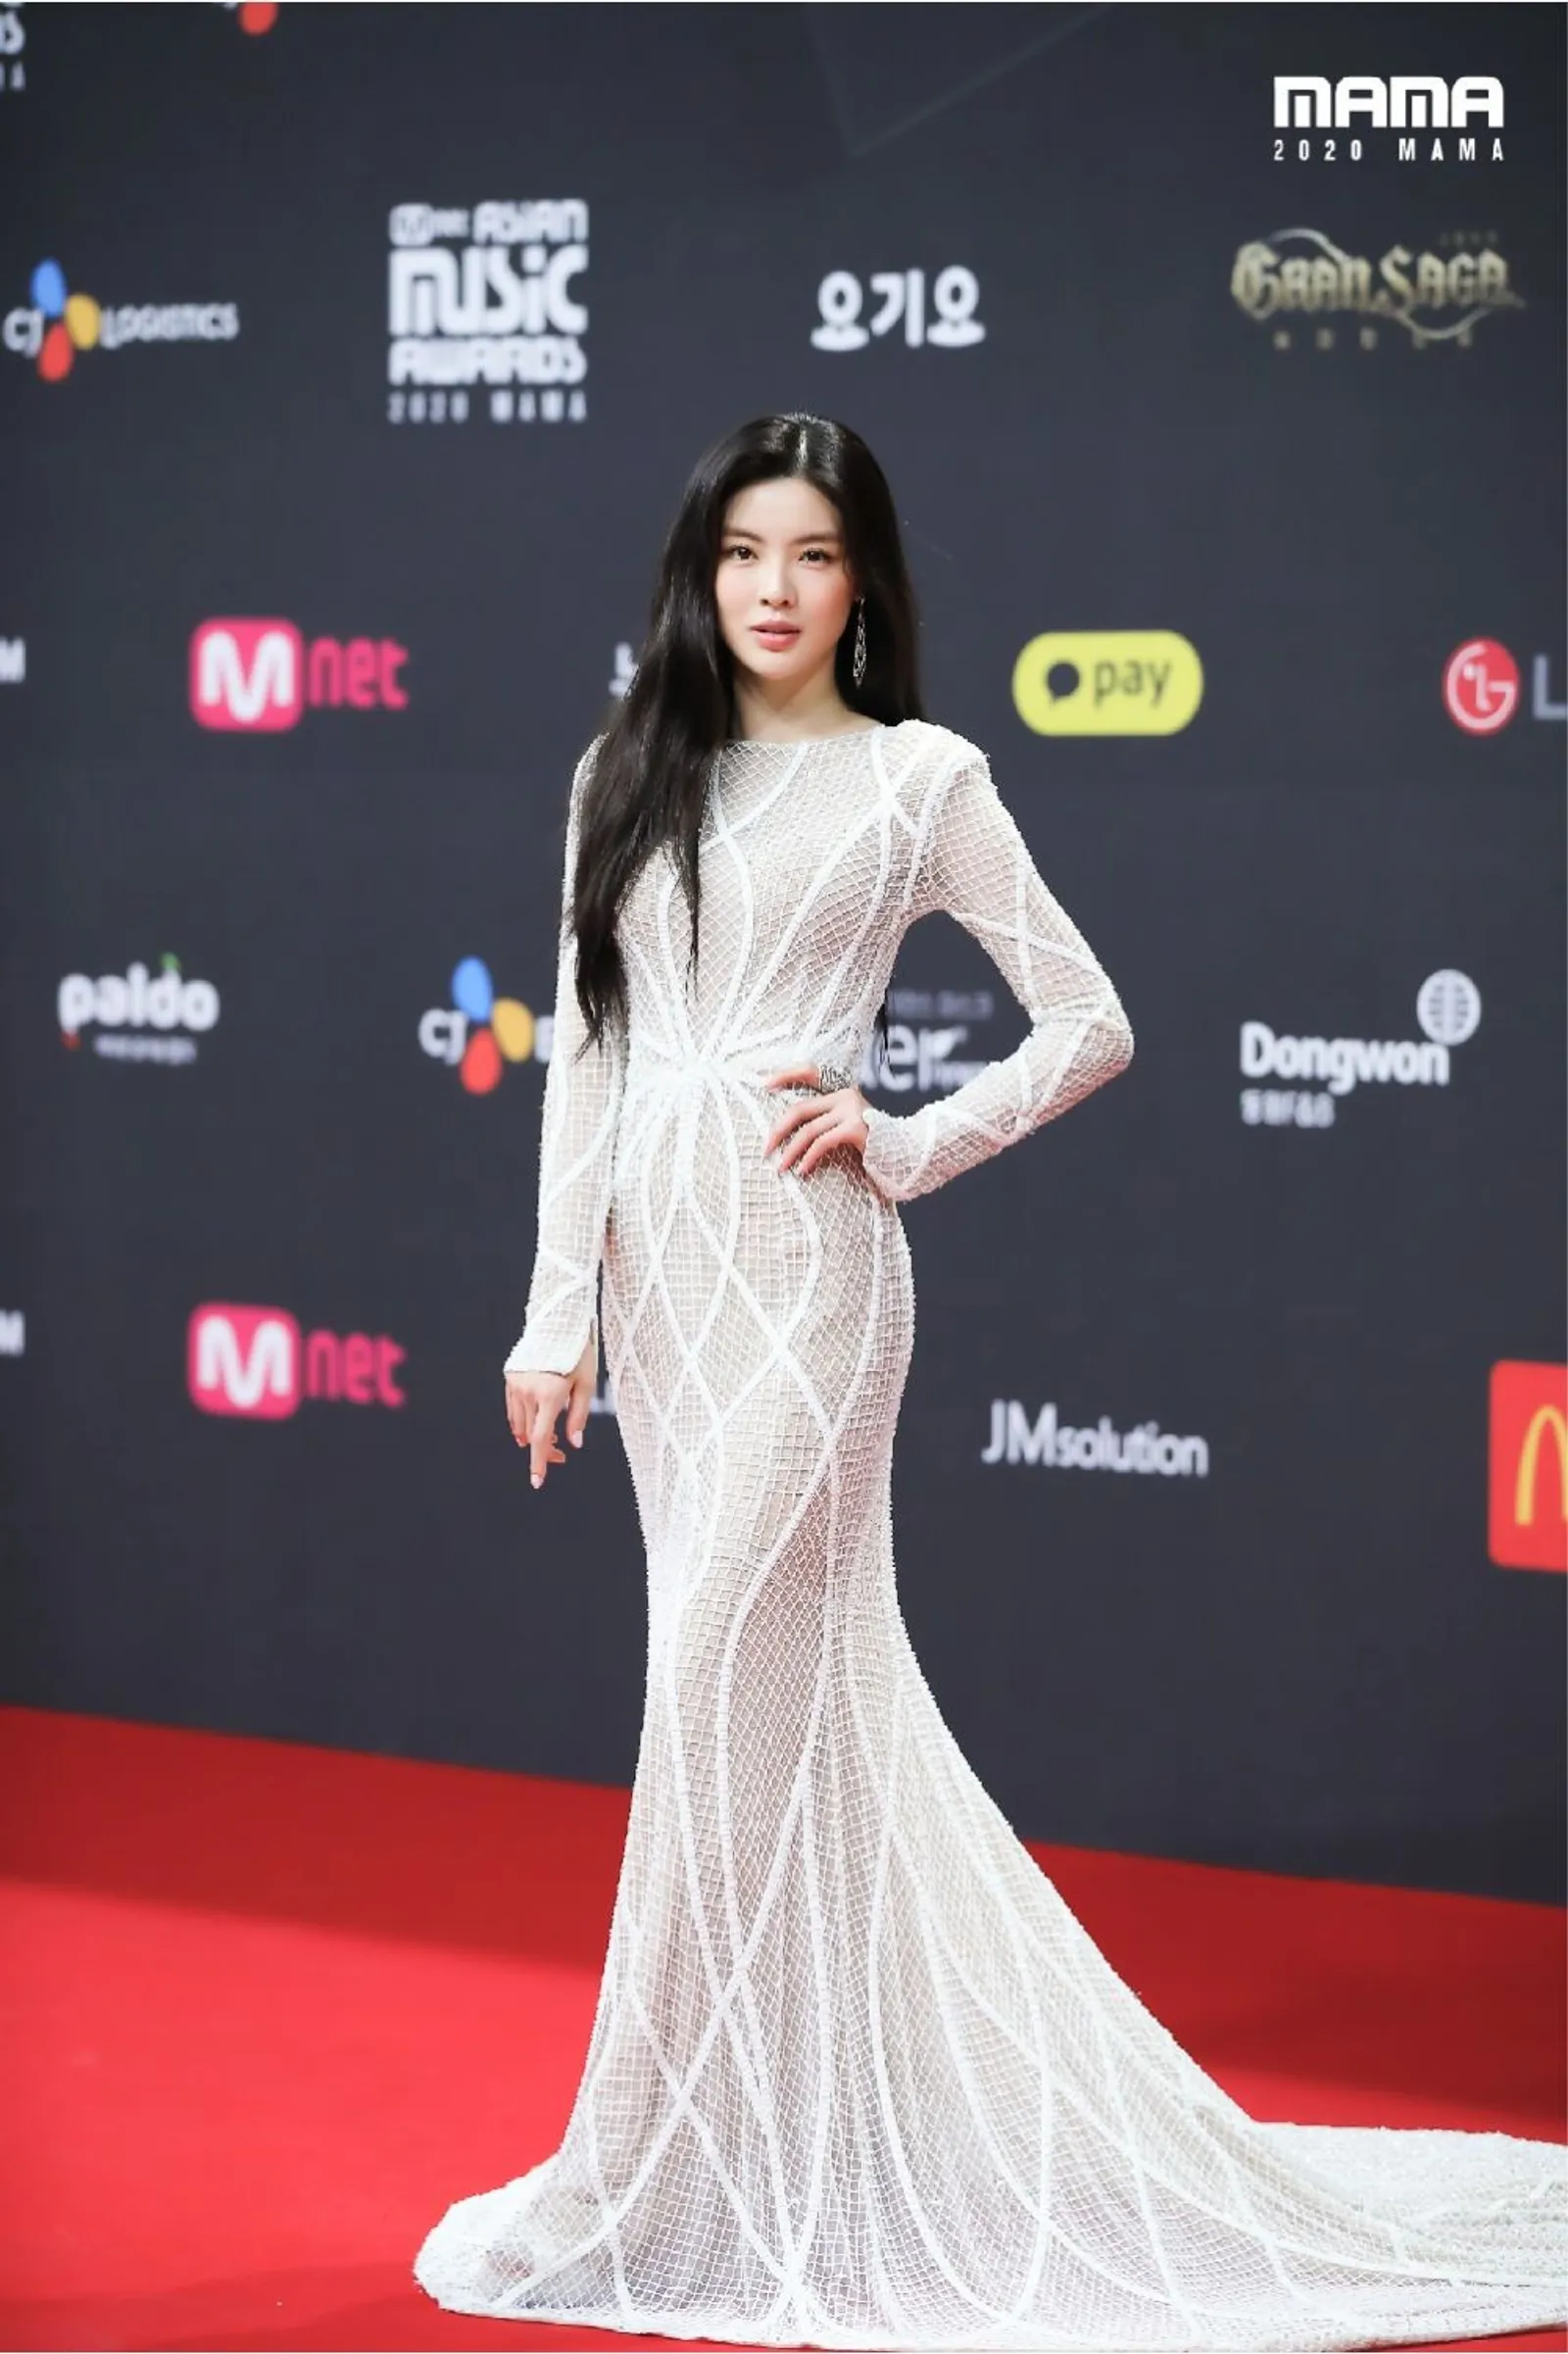 10 Gaya Terbaik Artis Korea di MAMA 2020, BTS hingga Lee Sun Bin